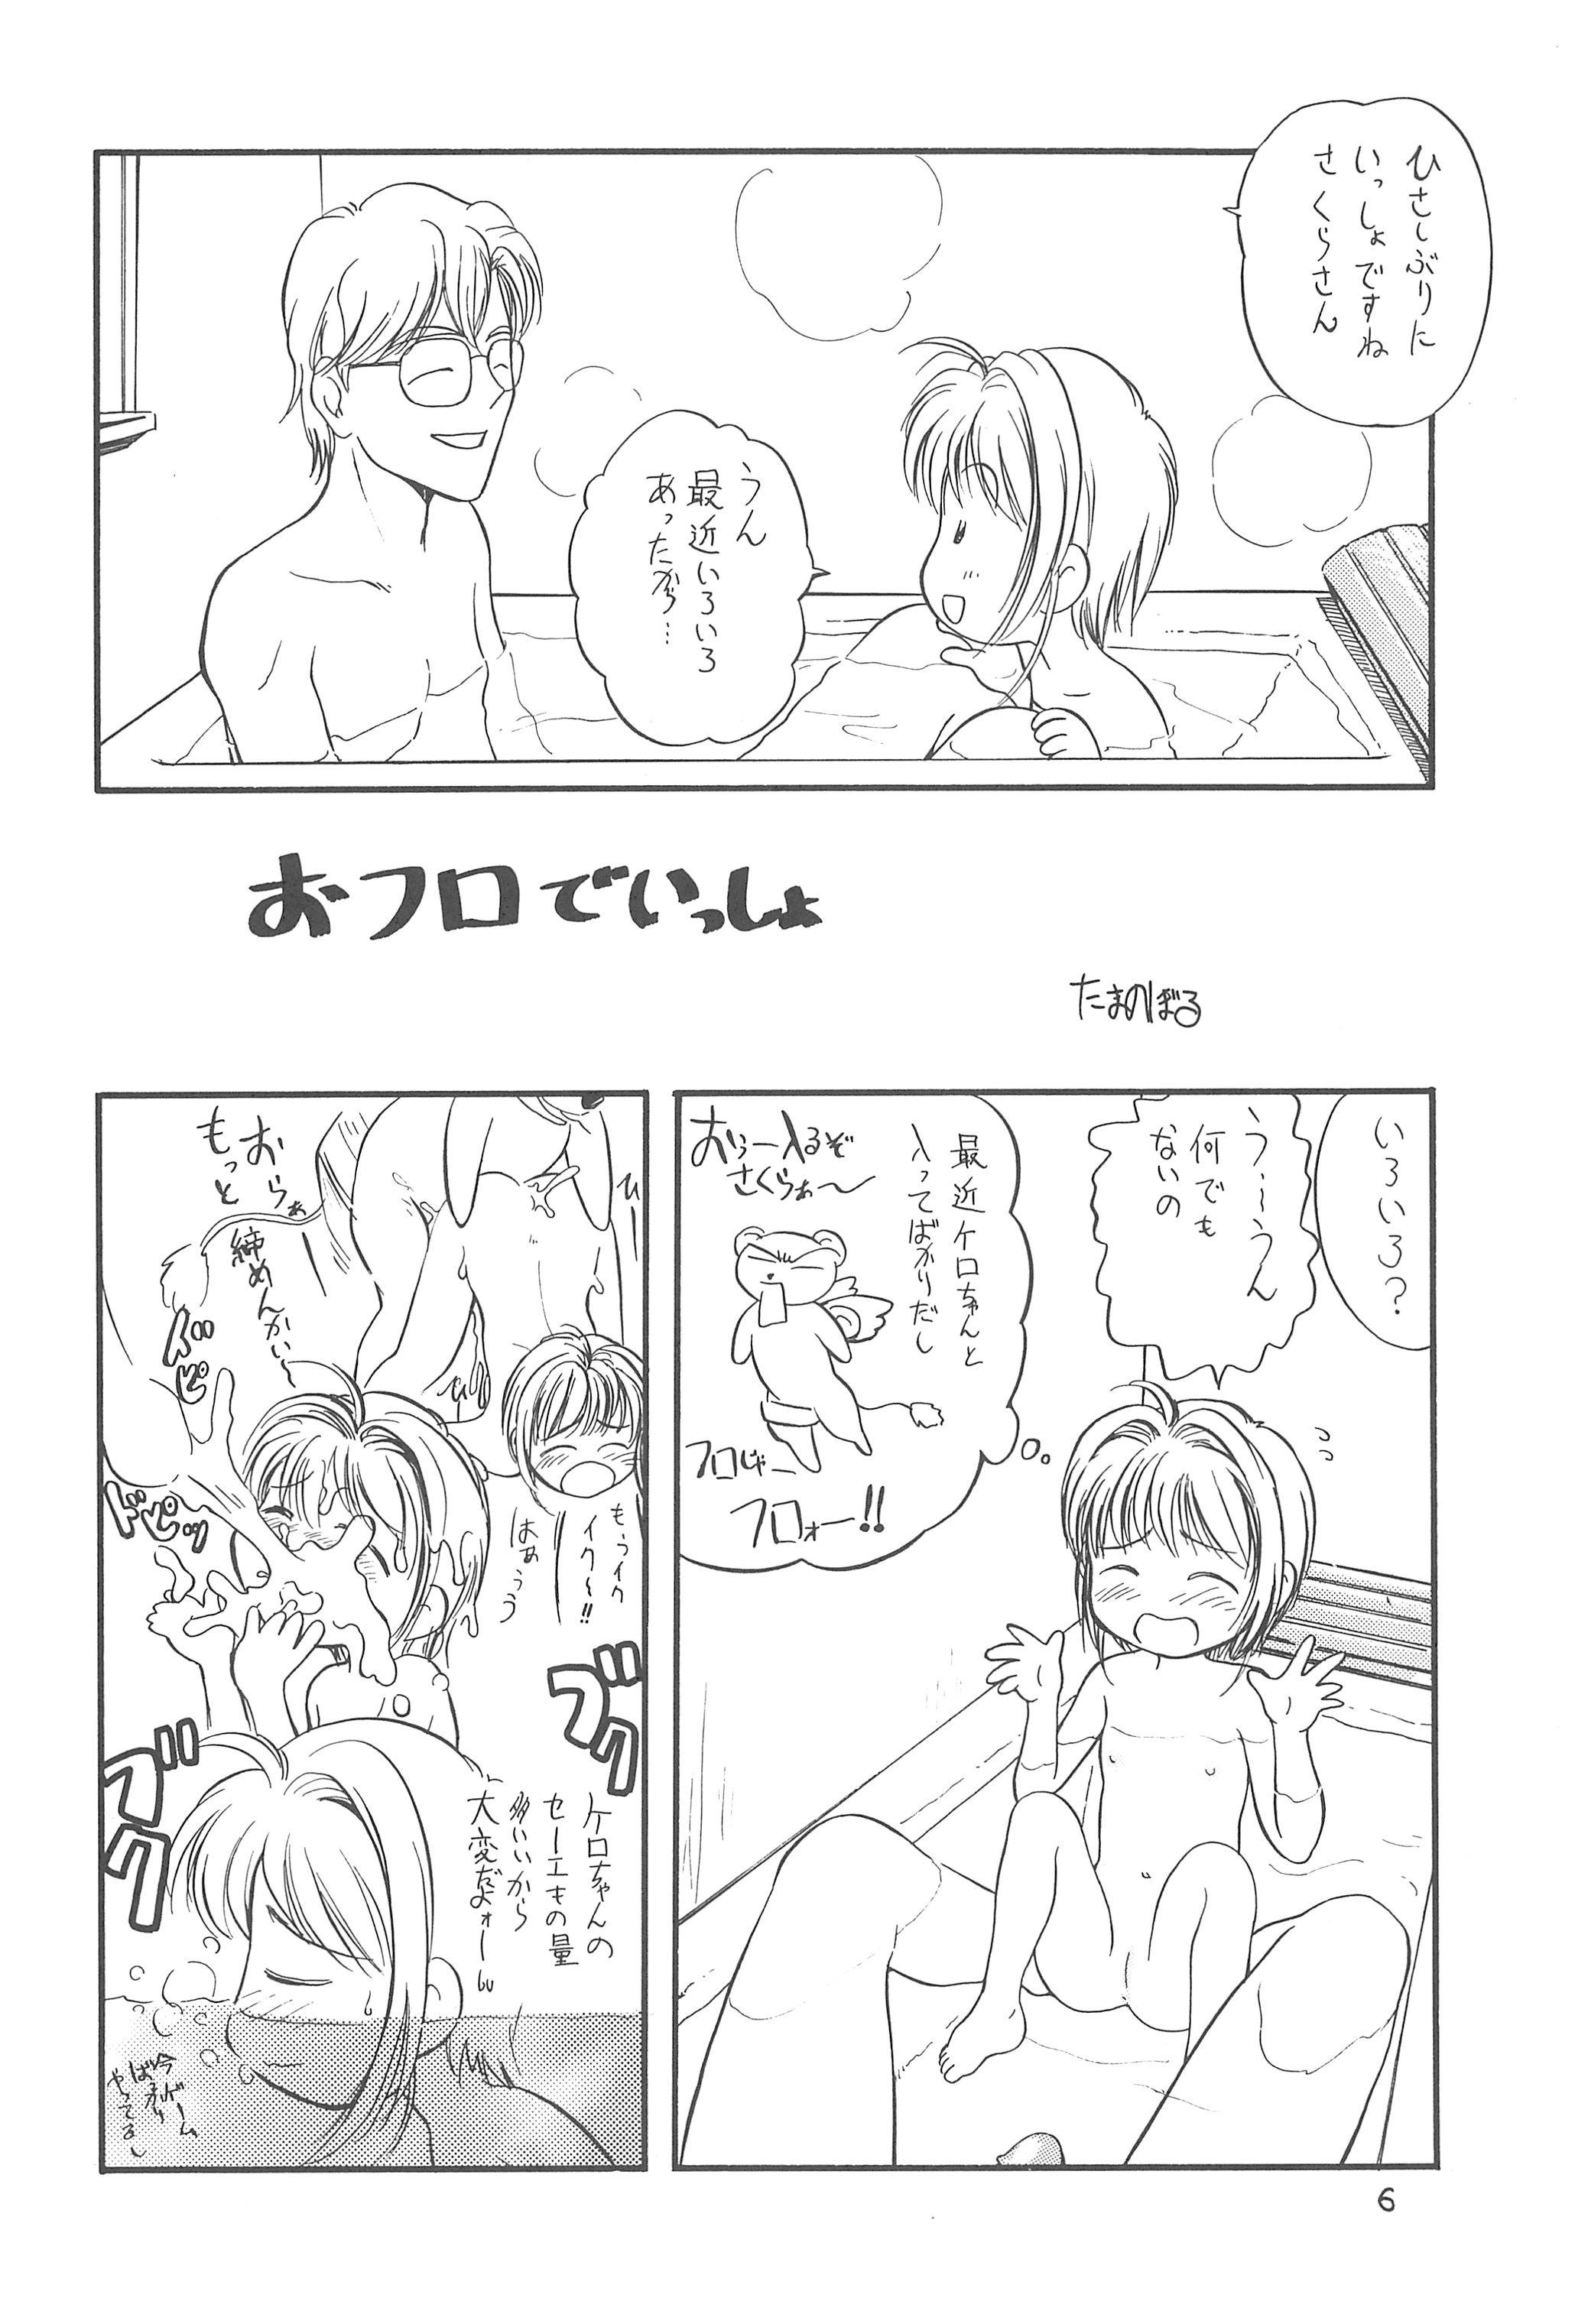 Twerk Sakura Sakura - Cardcaptor sakura Dando - Page 8